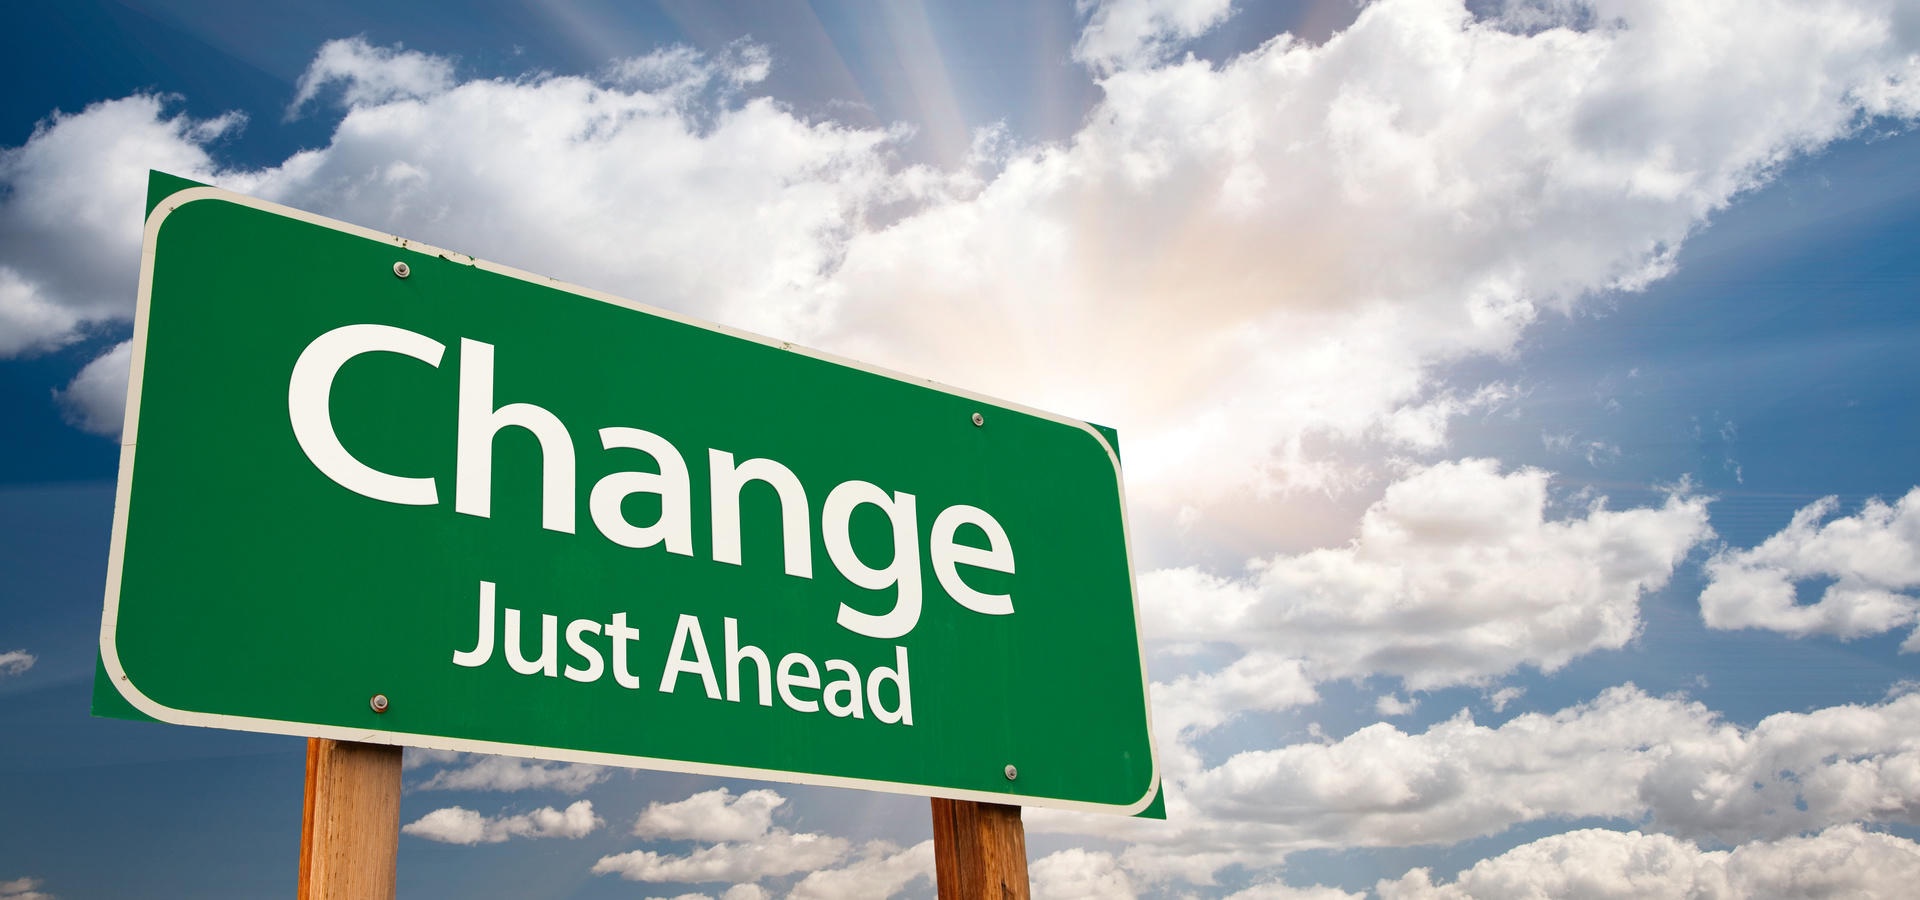 Software Governance: User Change Management